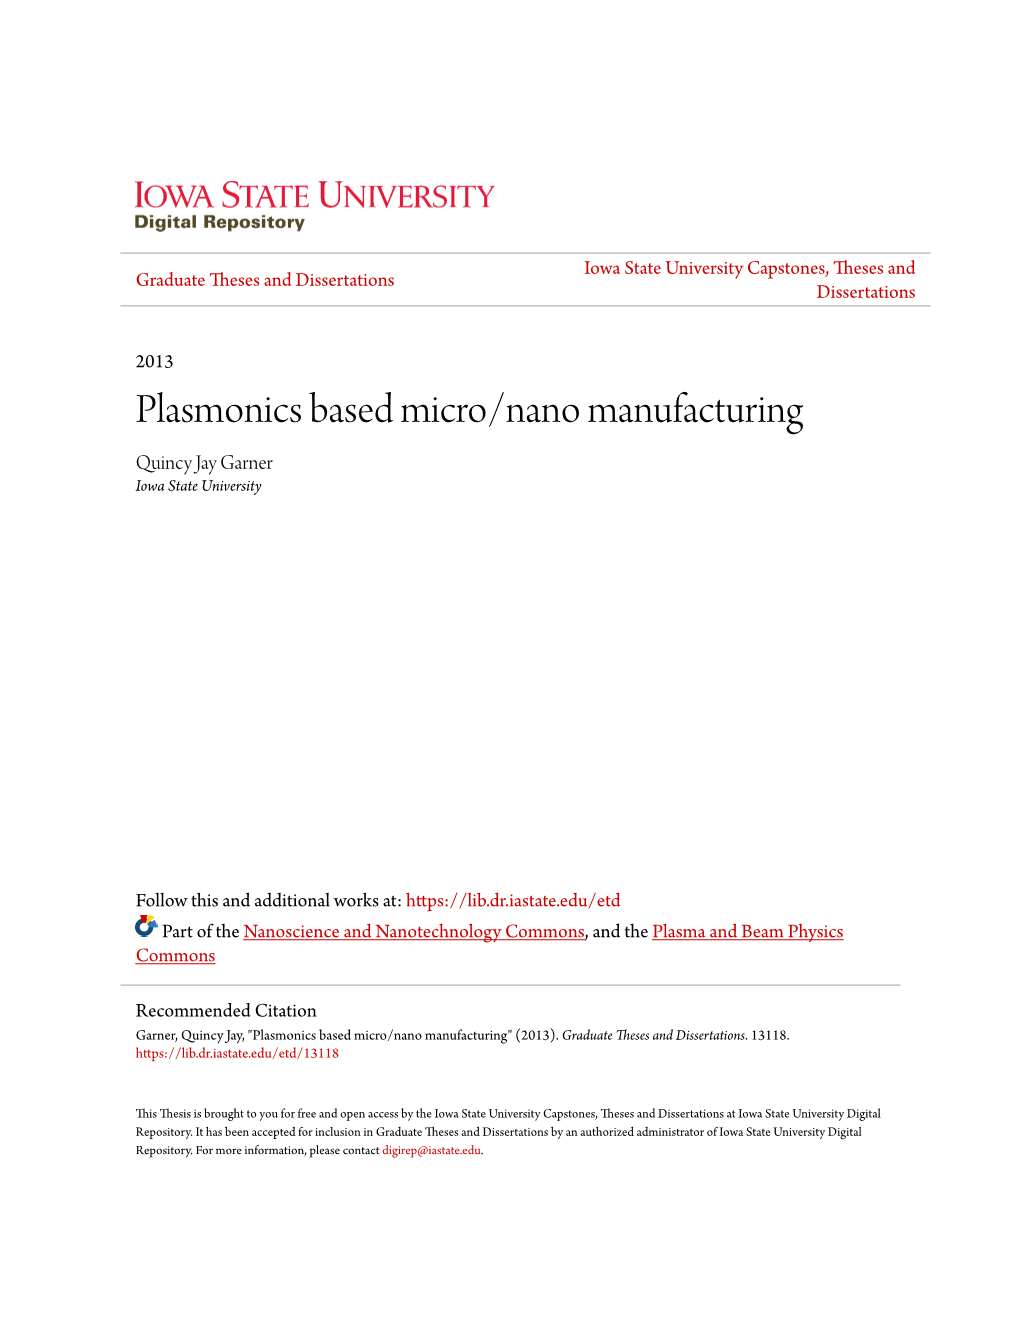 Plasmonics Based Micro/Nano Manufacturing Quincy Jay Garner Iowa State University